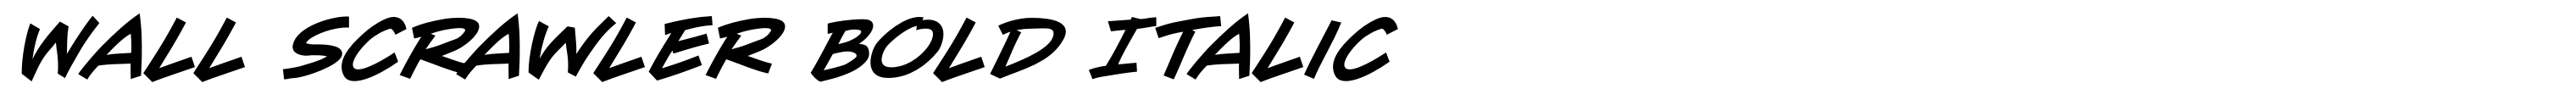 Wall Scrawler Bold Italic